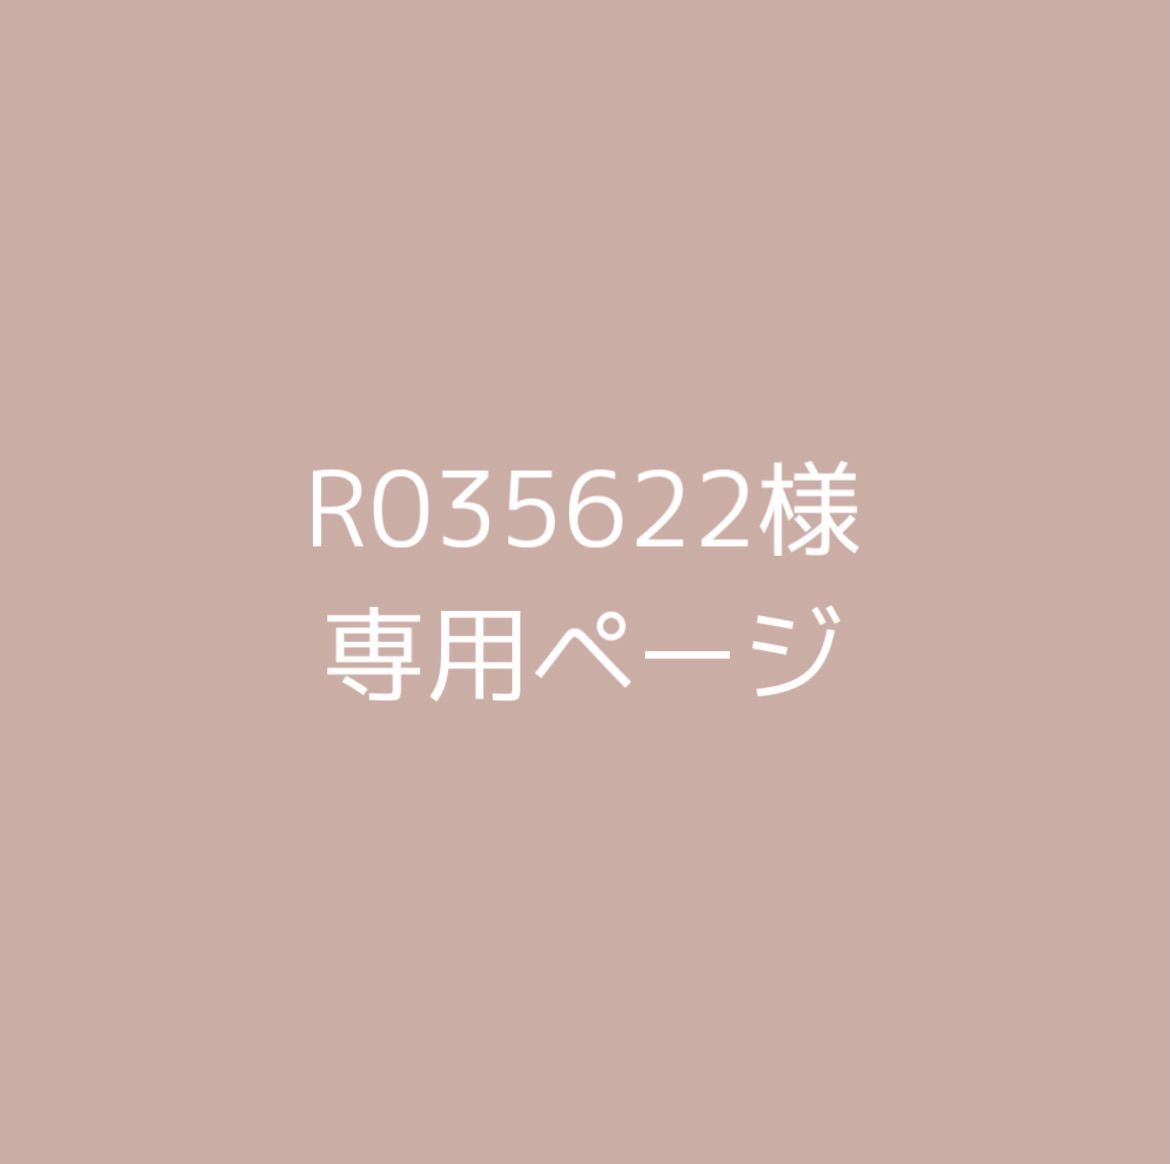 R035622様 専用ページ - メルカリ